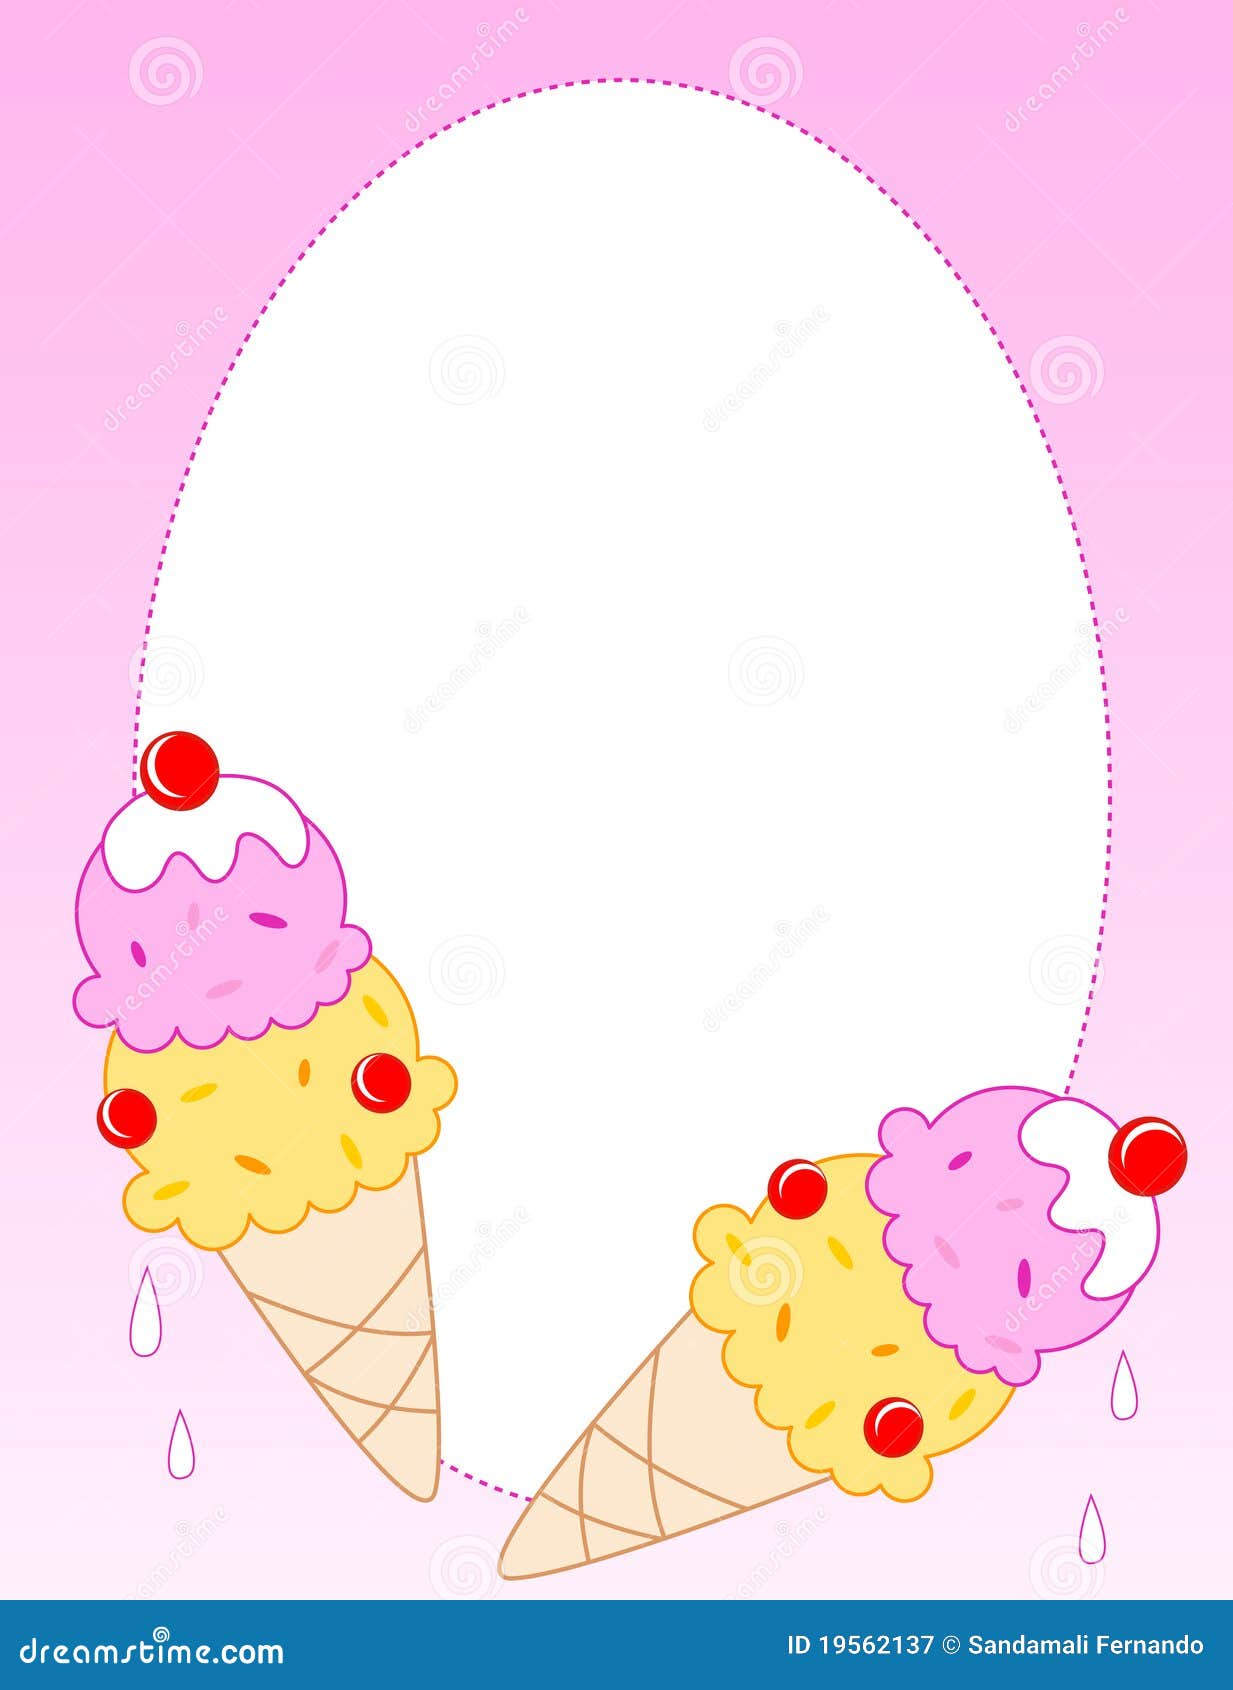 ice cream cone border clip art - photo #47